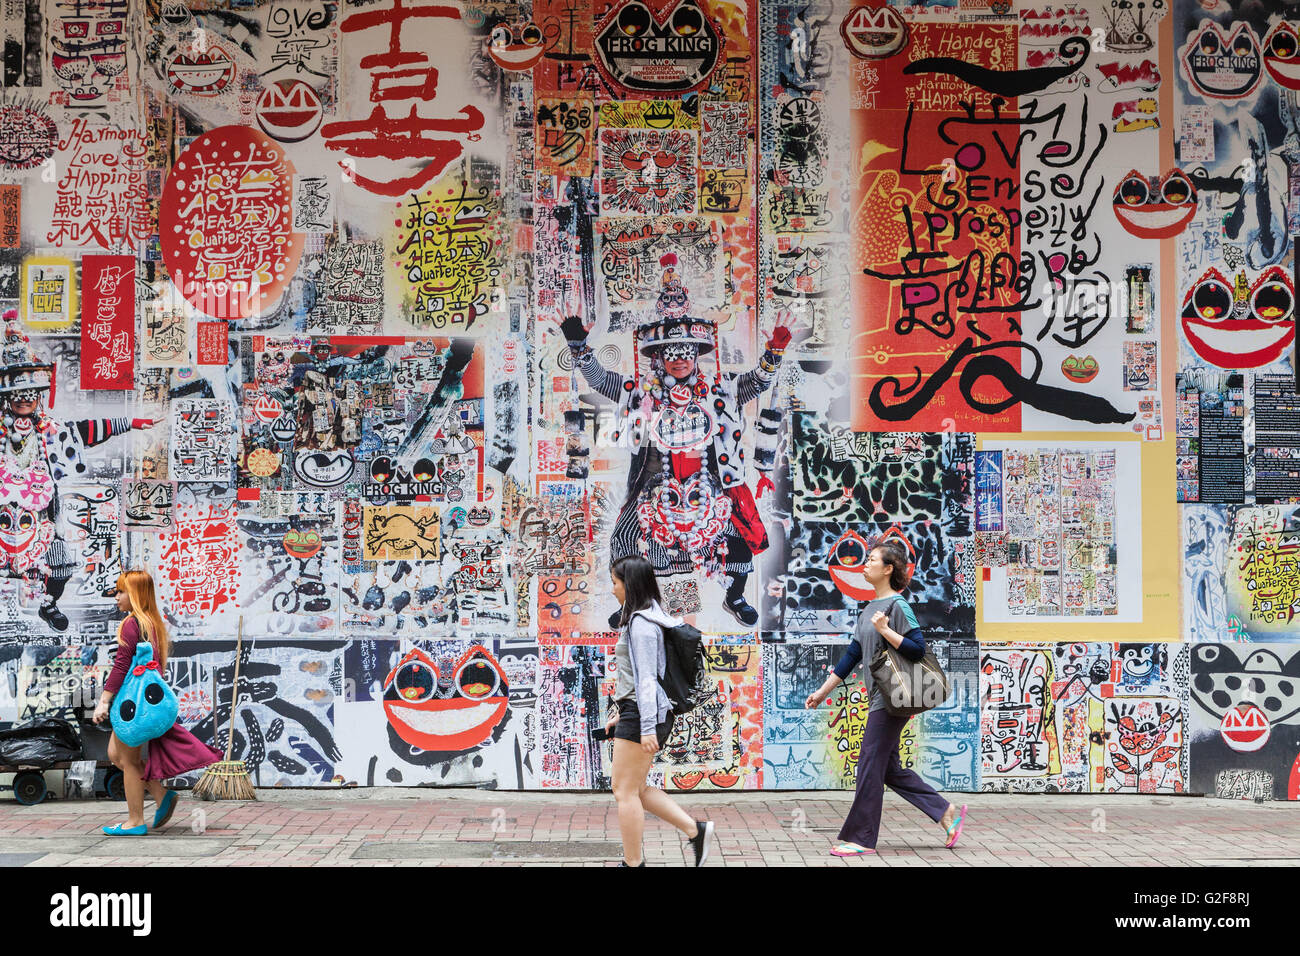 Hongkong, bedeckt großes Wandbild, Kunst im öffentlichen Raum der Kalligraphie und Bilder auf einer belebten Straße, eine typische urbane Stadtbild, Graffiti, Wand Stockfoto